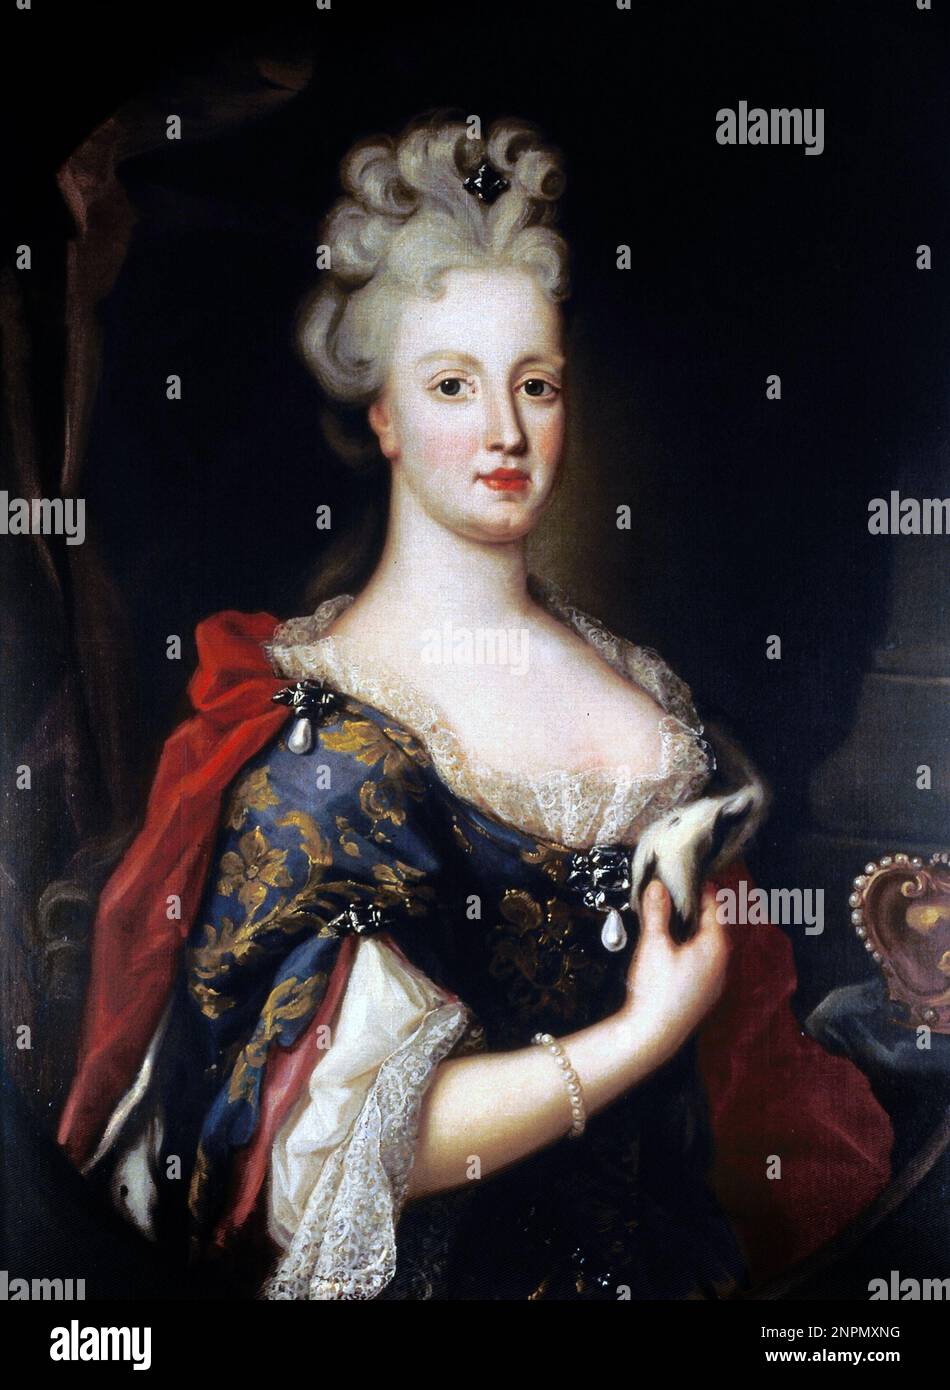 Porträt von Maria Anna von Österreich, Königin von Portugal, Maria Anna von Österreich (Maria Anna Anna Josepha Antonia Regina; 1683-1754) Königin von Portugal als Ehefrau von König Johannes V. von Portugal. Stockfoto